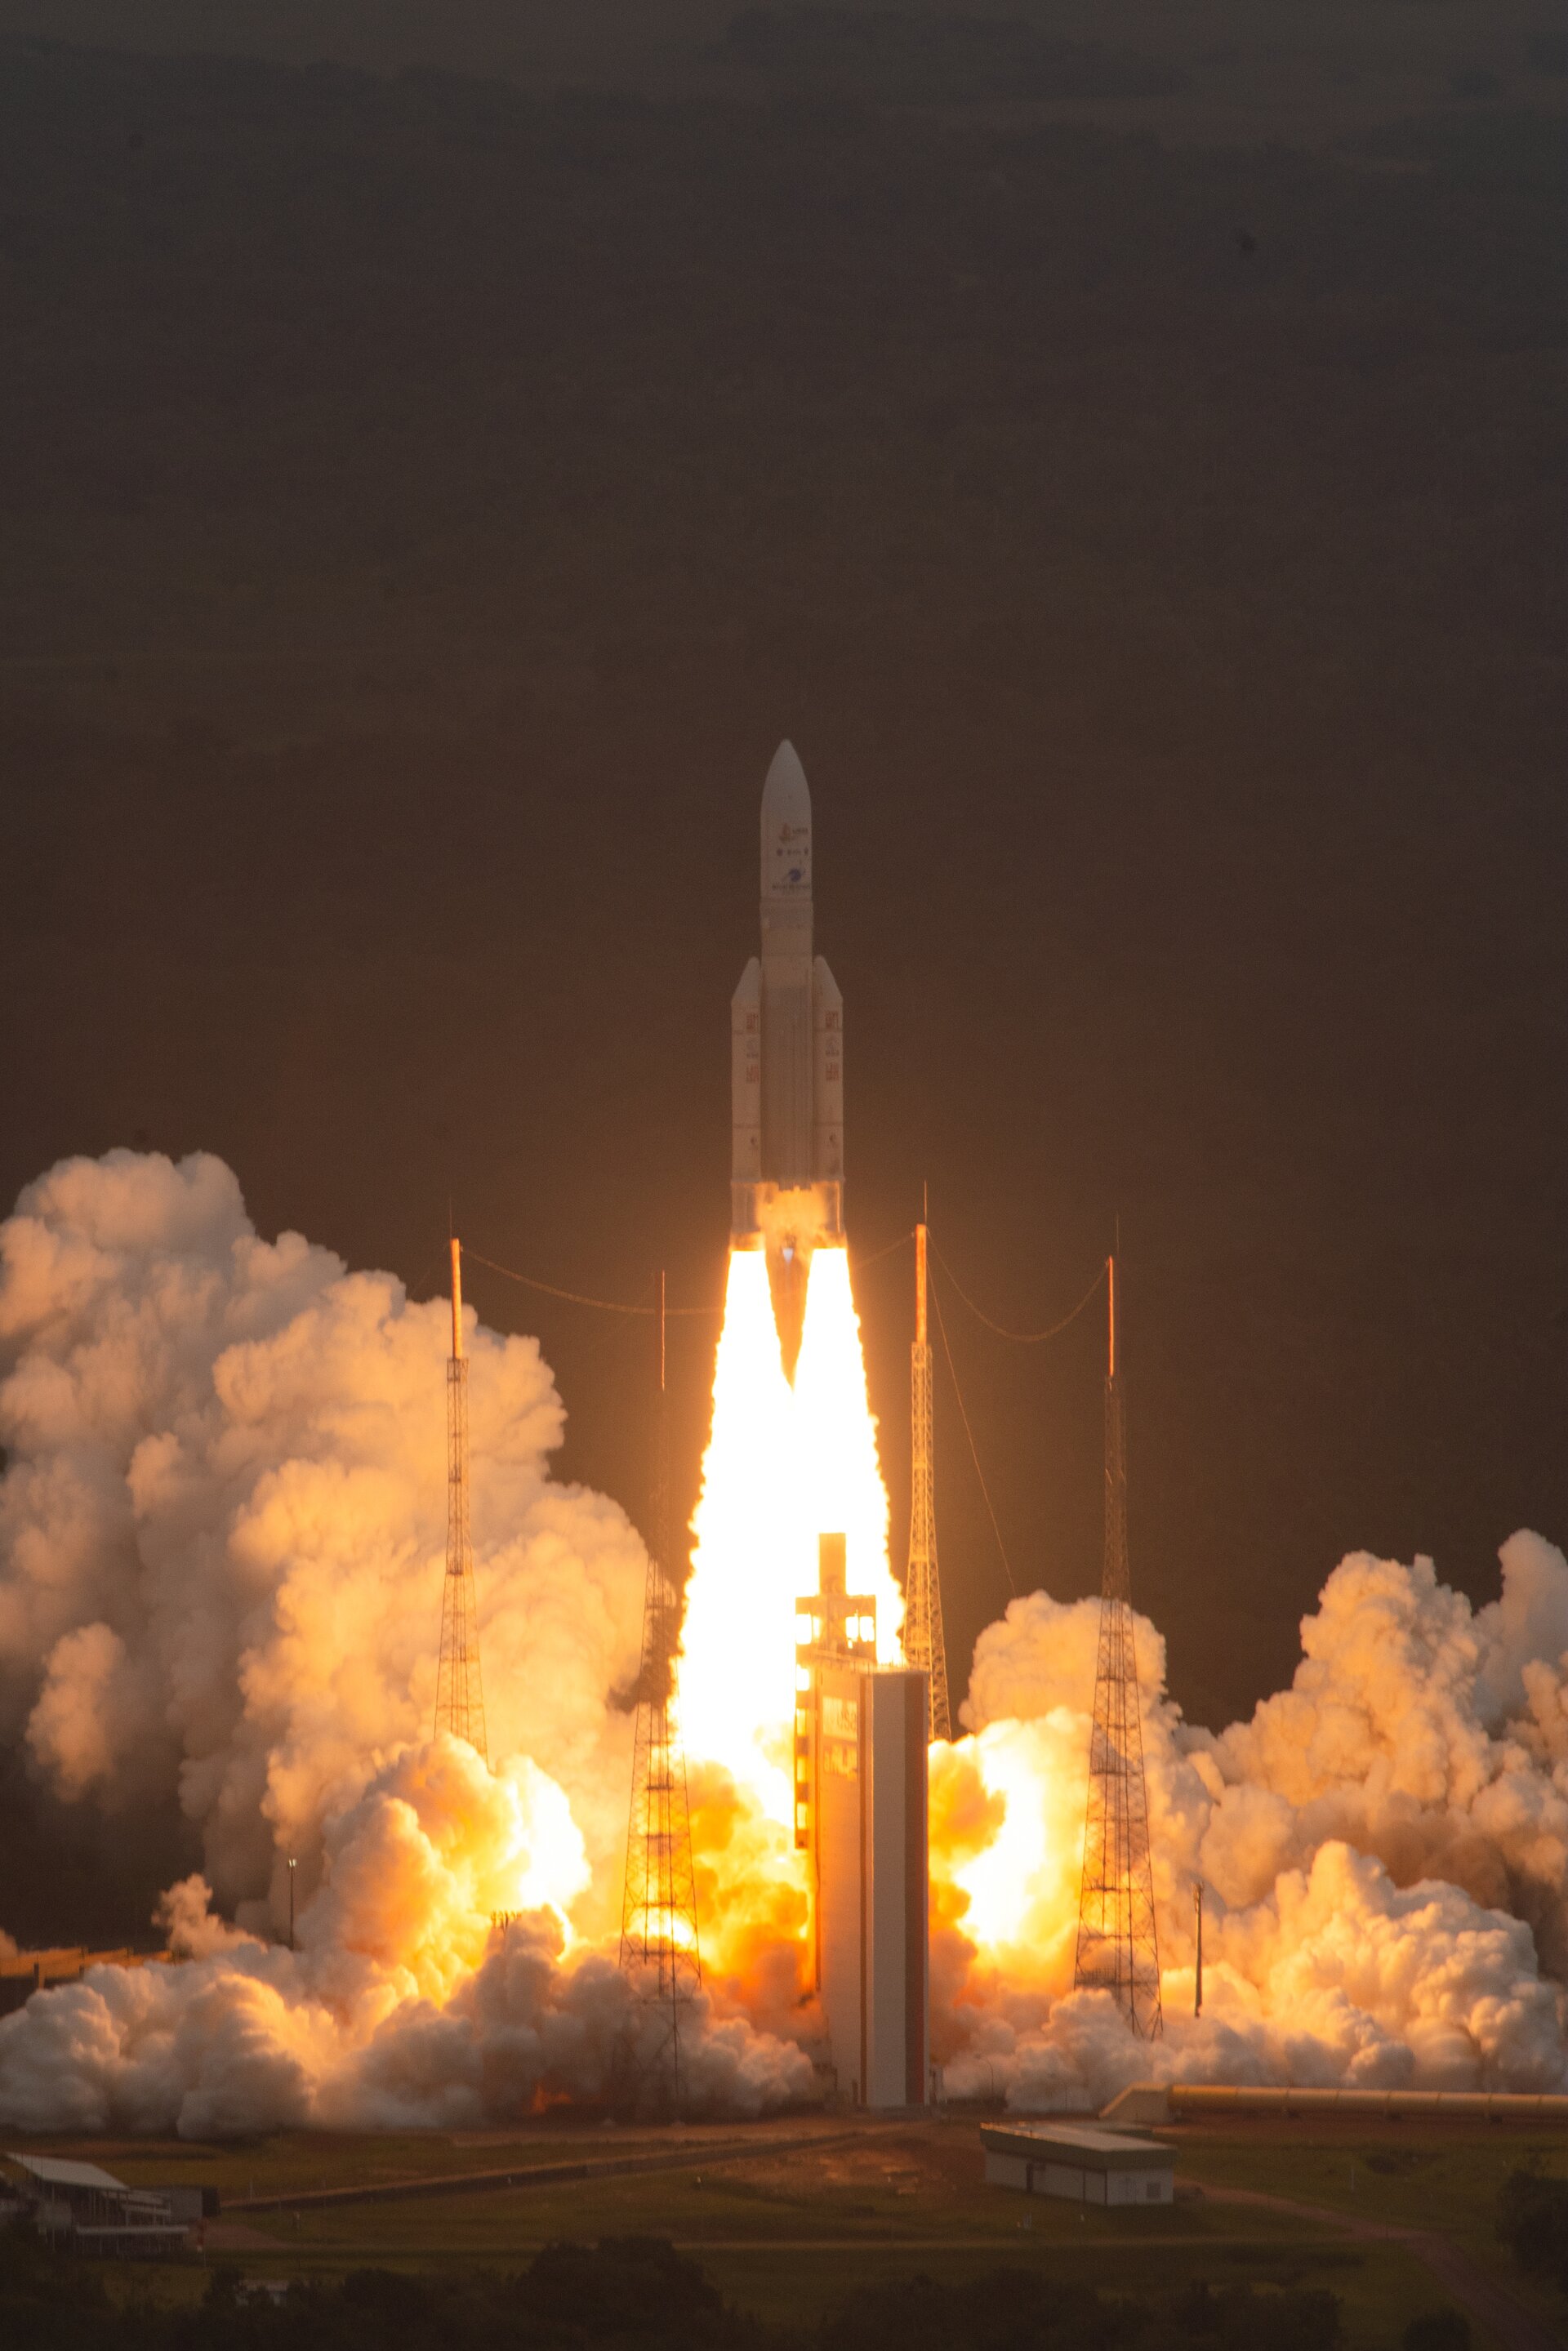 Peluncuran Ariane 5 yang tepat kemungkinan akan memperpanjang masa pakai Webb yang diharapkan